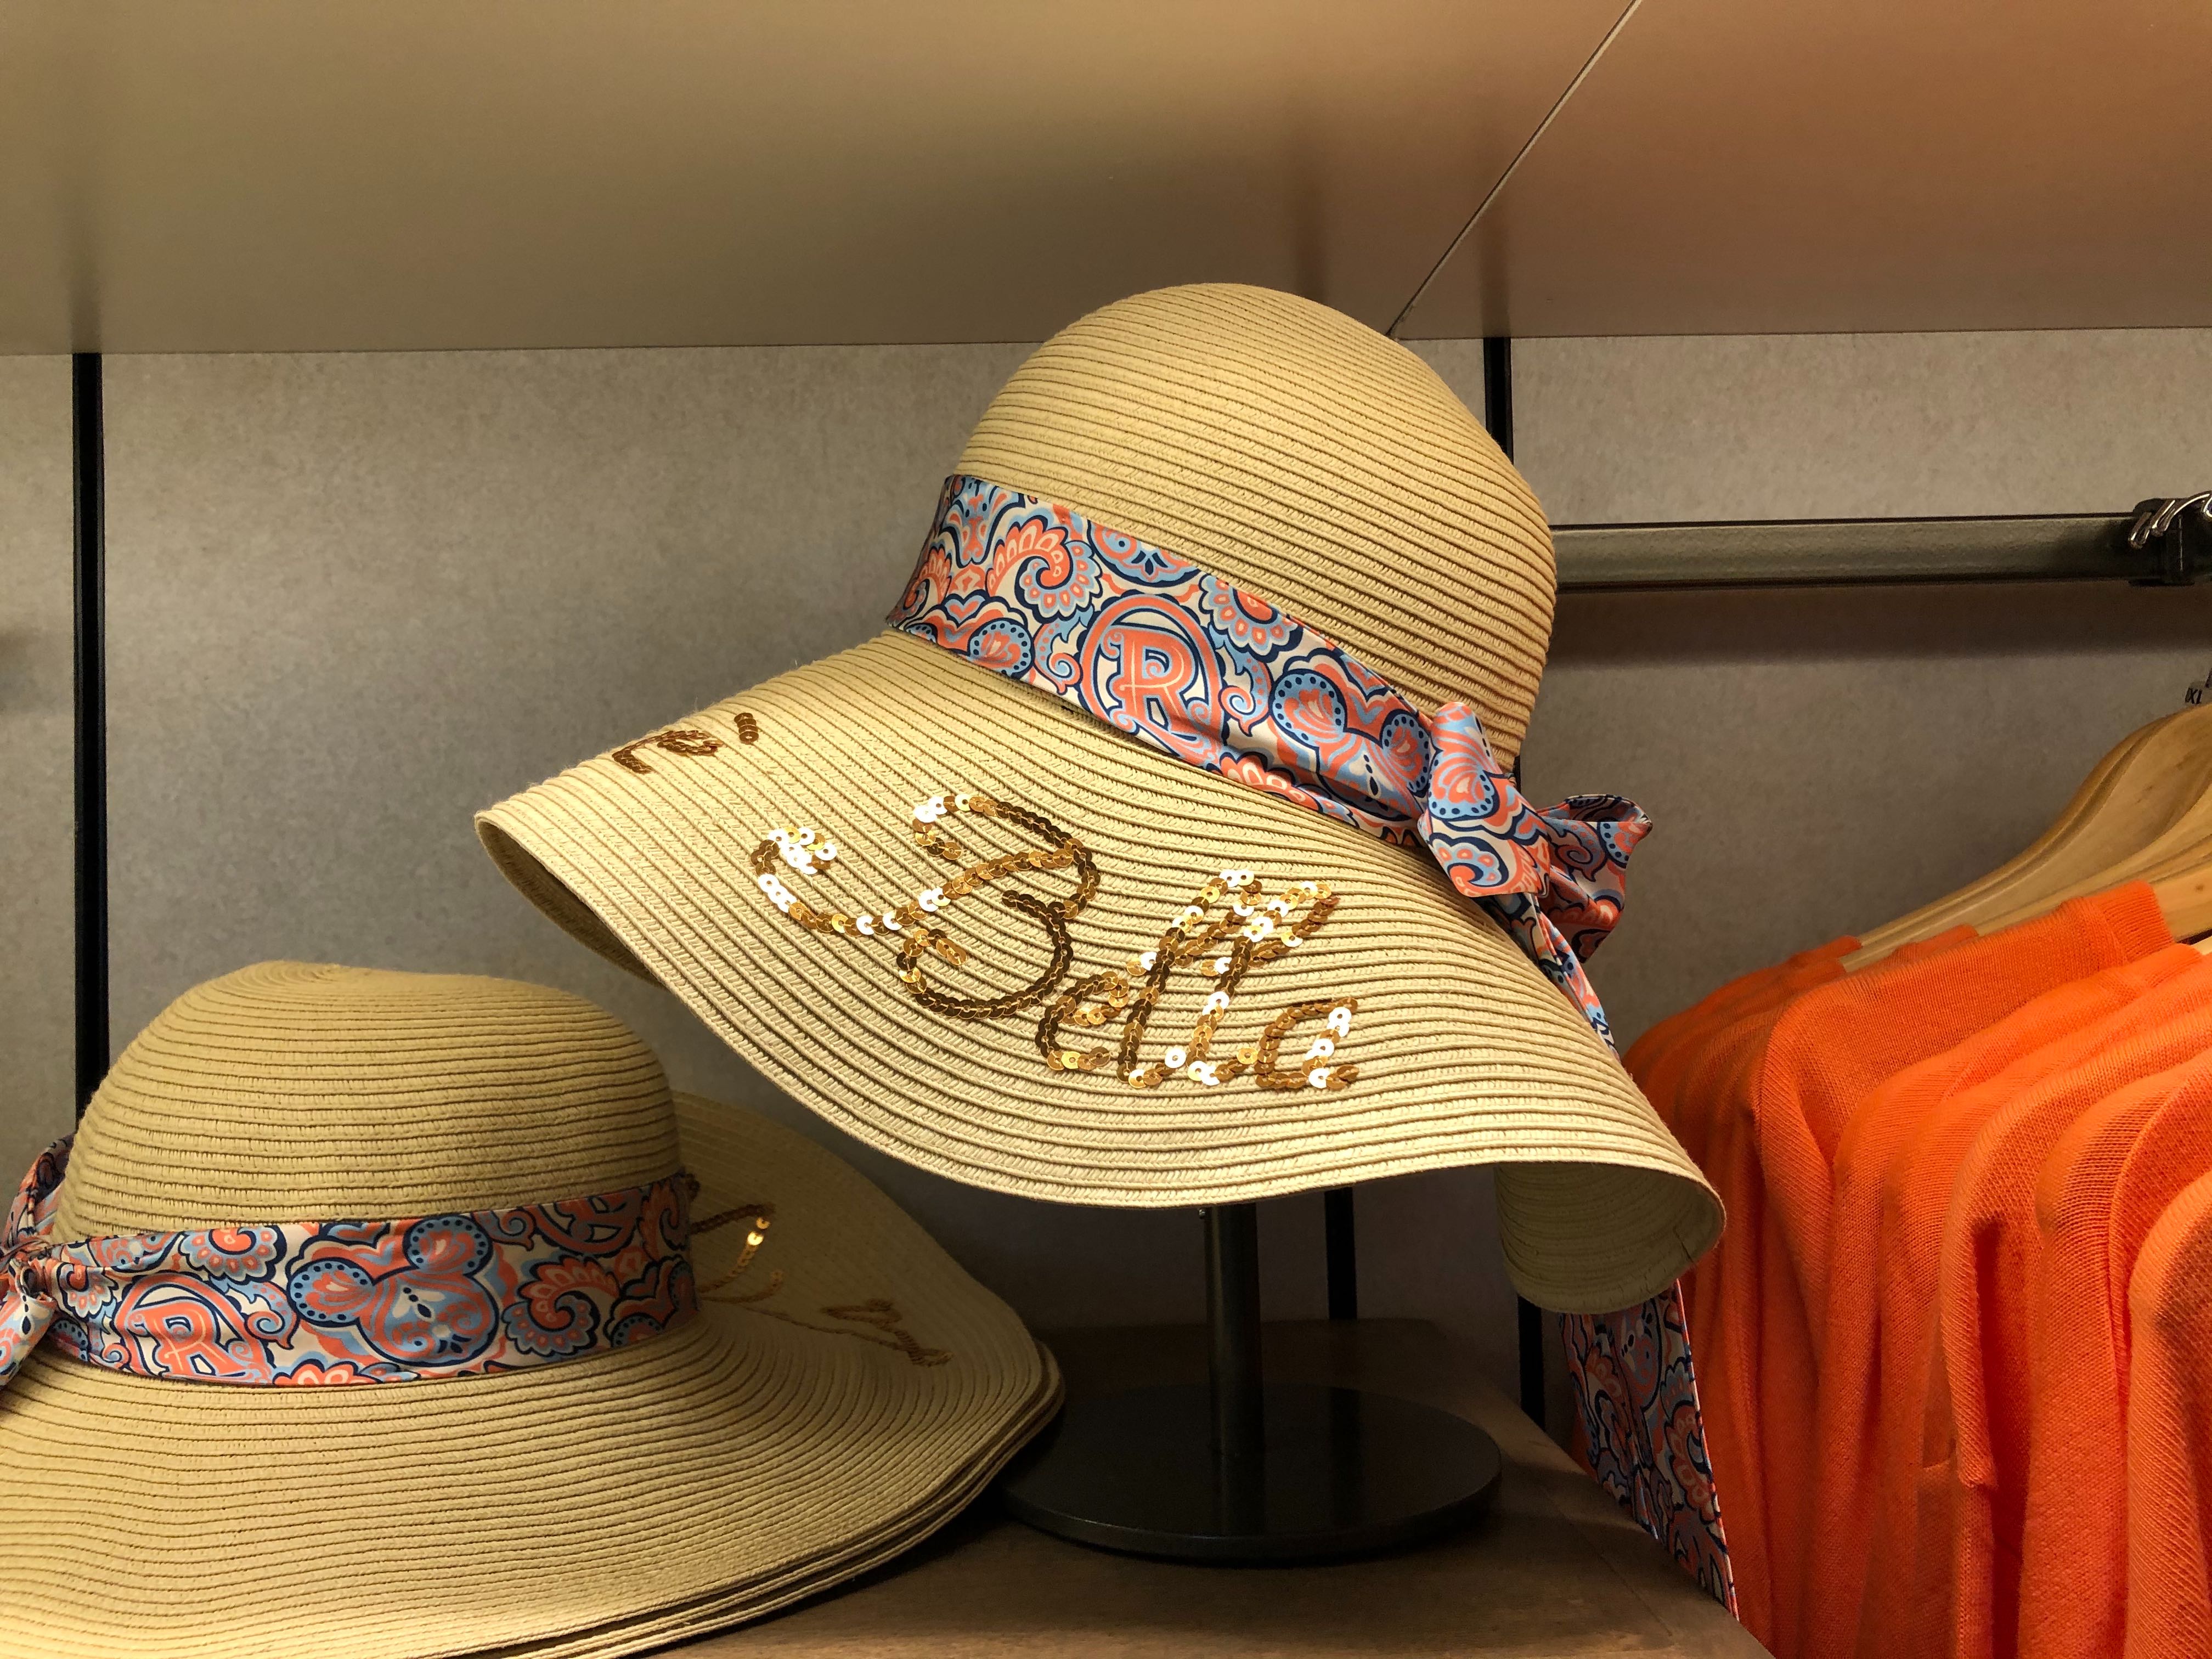 Straw Riviera Resort Sequined Sun Hat - $34.99